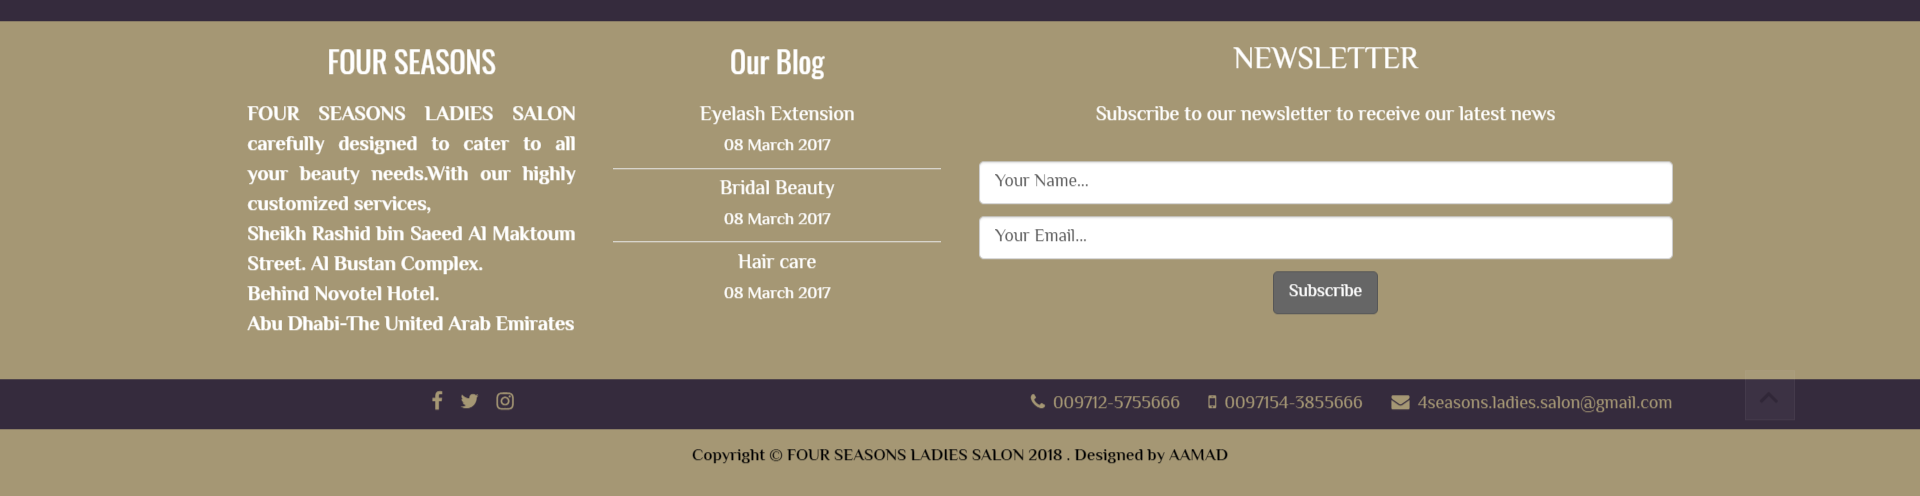 تصميم موقع الكتروني لصالون تجميل فورسيزون في الرياض السعودية